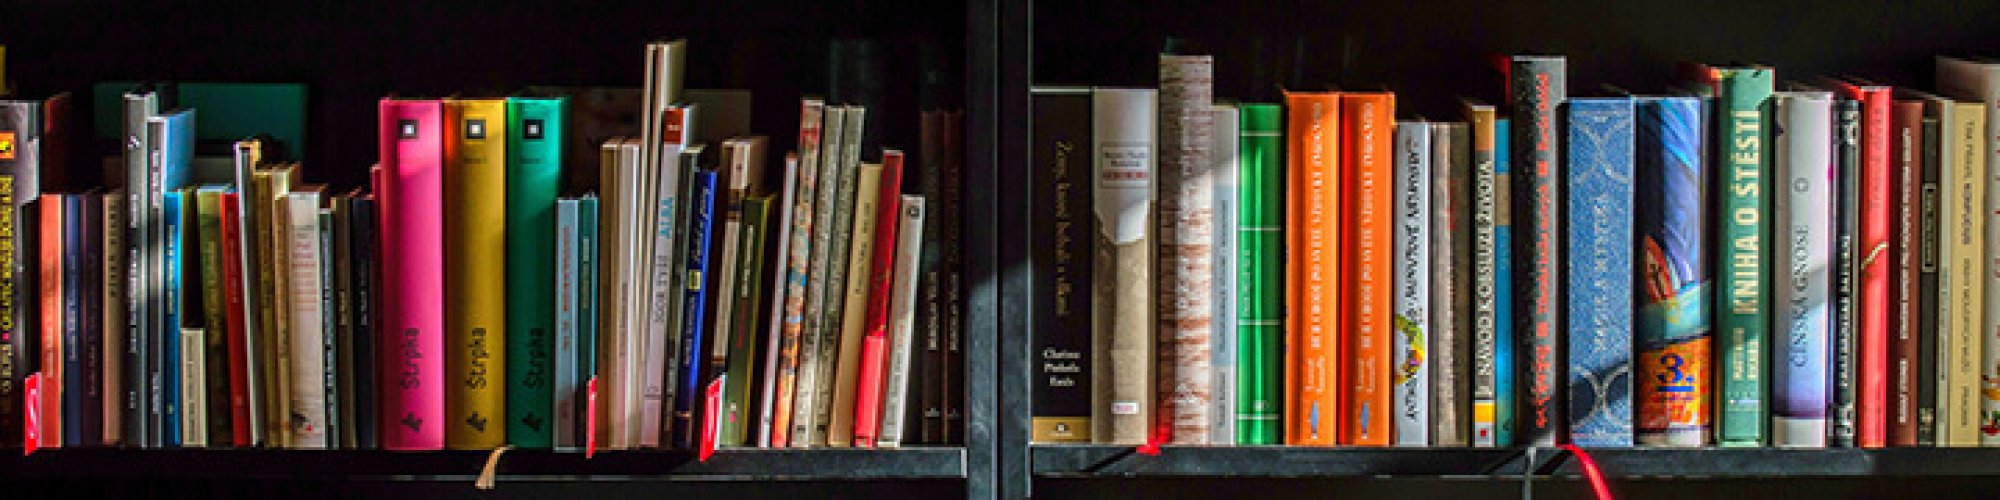 bookcase-books-bookshelves-159711